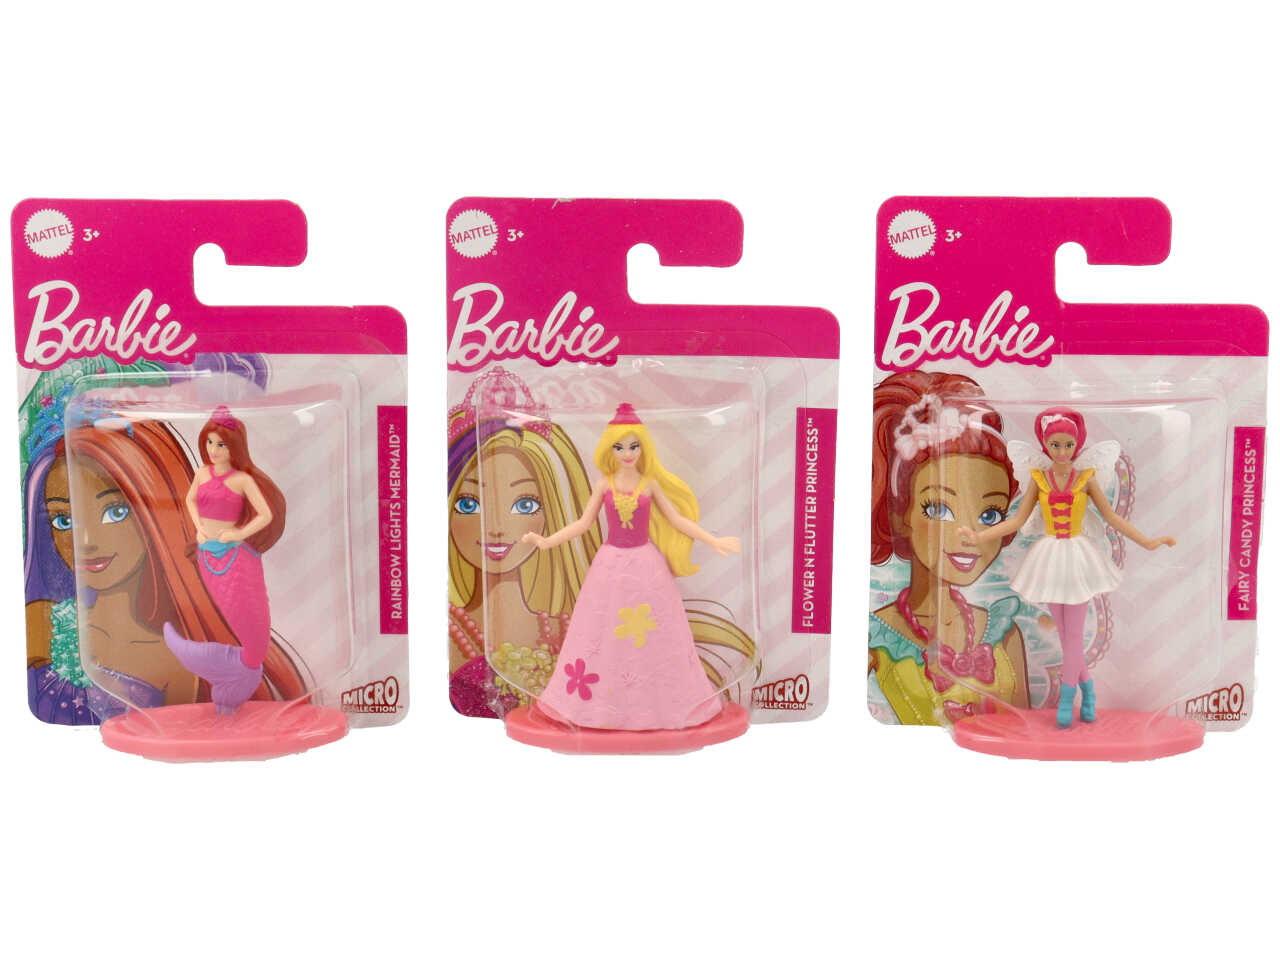 Caso 20 Pcs Colourful Mini Carino Sacchetti di Sacchetti di Plastica  Multi-Borsa di stile Accessori Casa Delle Bambole per la Bambola di Barbie  12 ''Bambini giocattoli Set - AliExpress